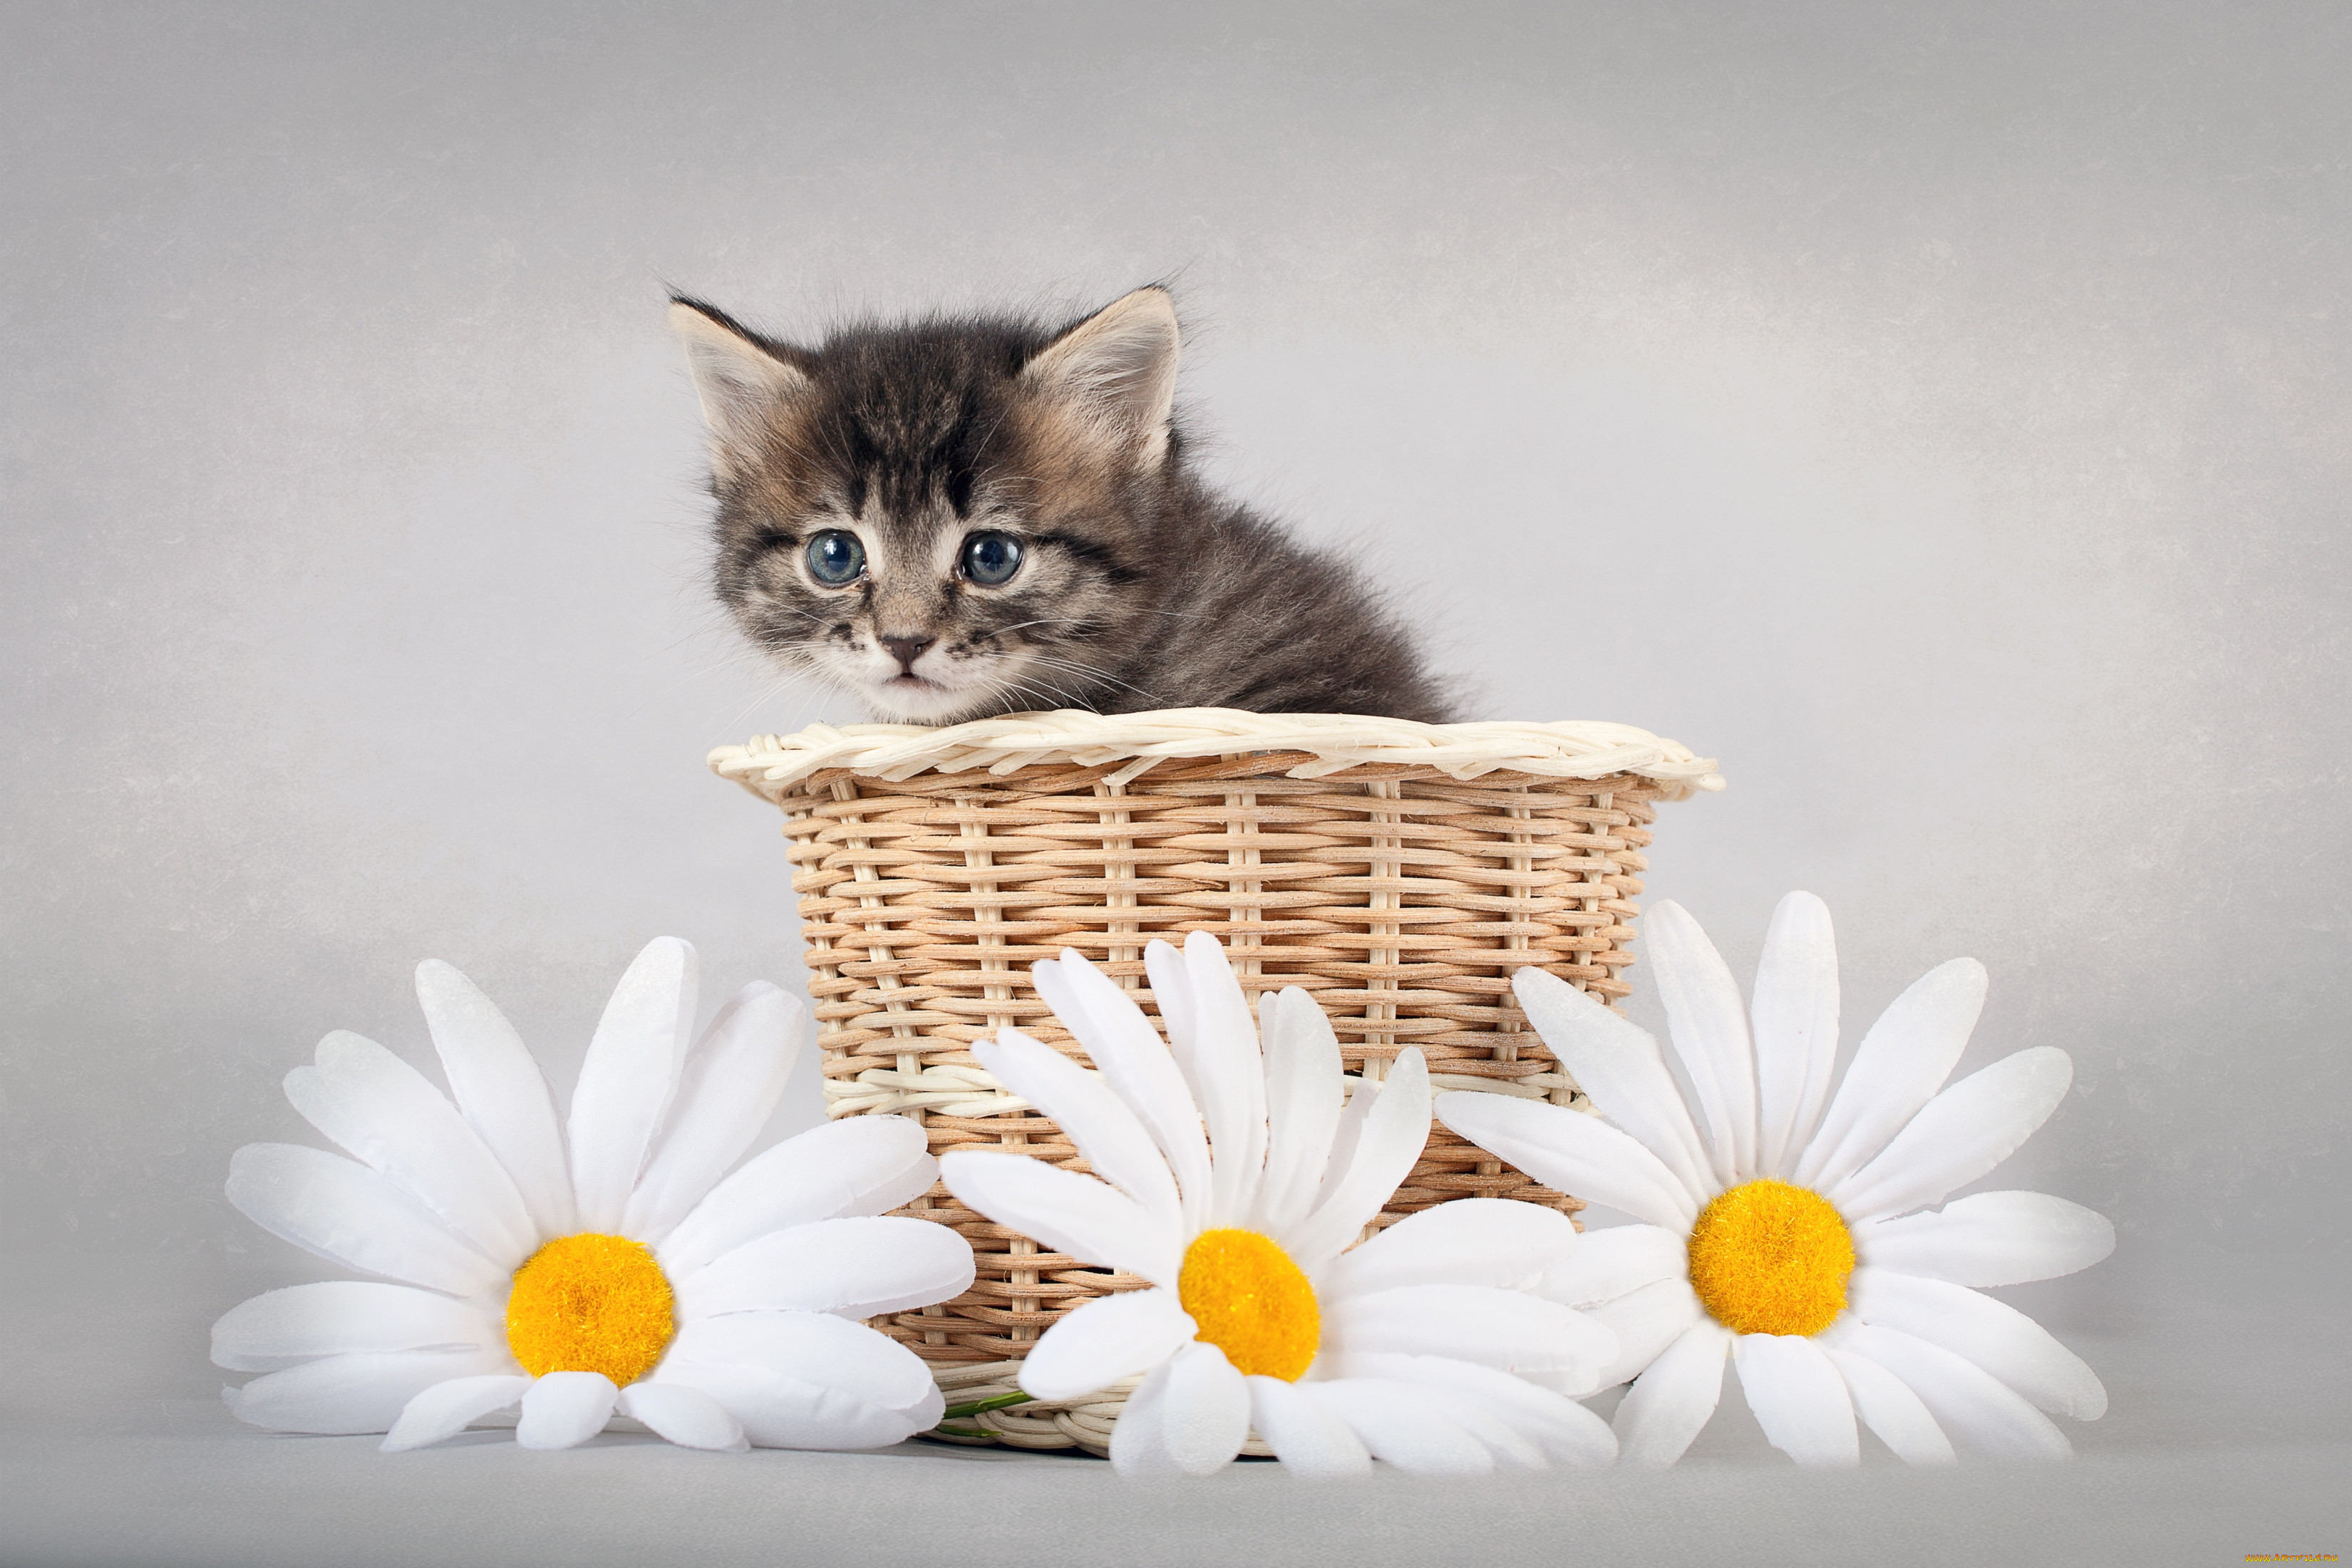 Видео поздравление насте с днем рождения. Красивые котята. Кошка в ромашках. Котенок в корзинке с цветами. Открытка «котики».